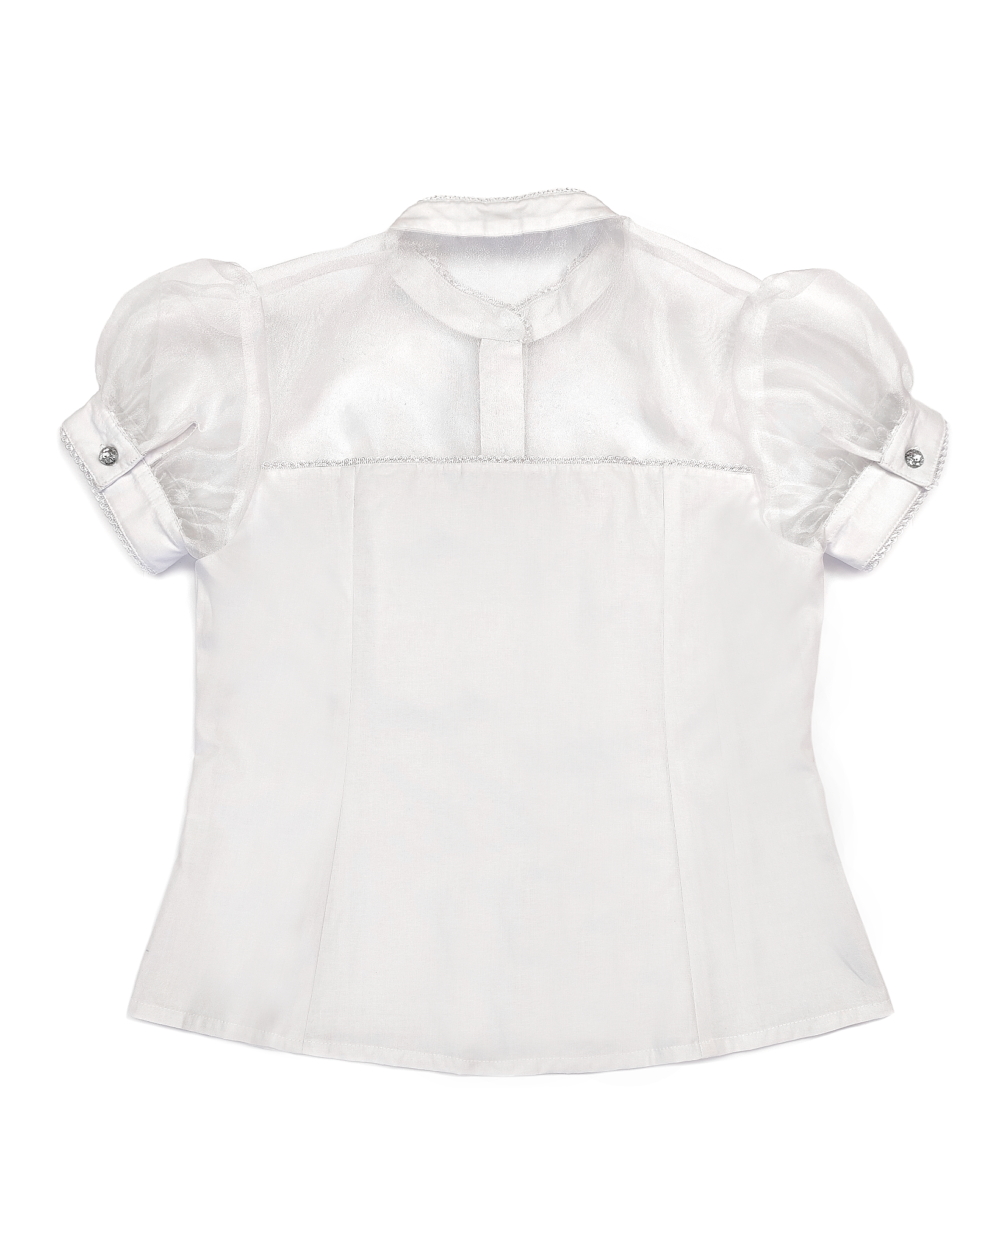 Glinda short sleeve blouse melikestea - white